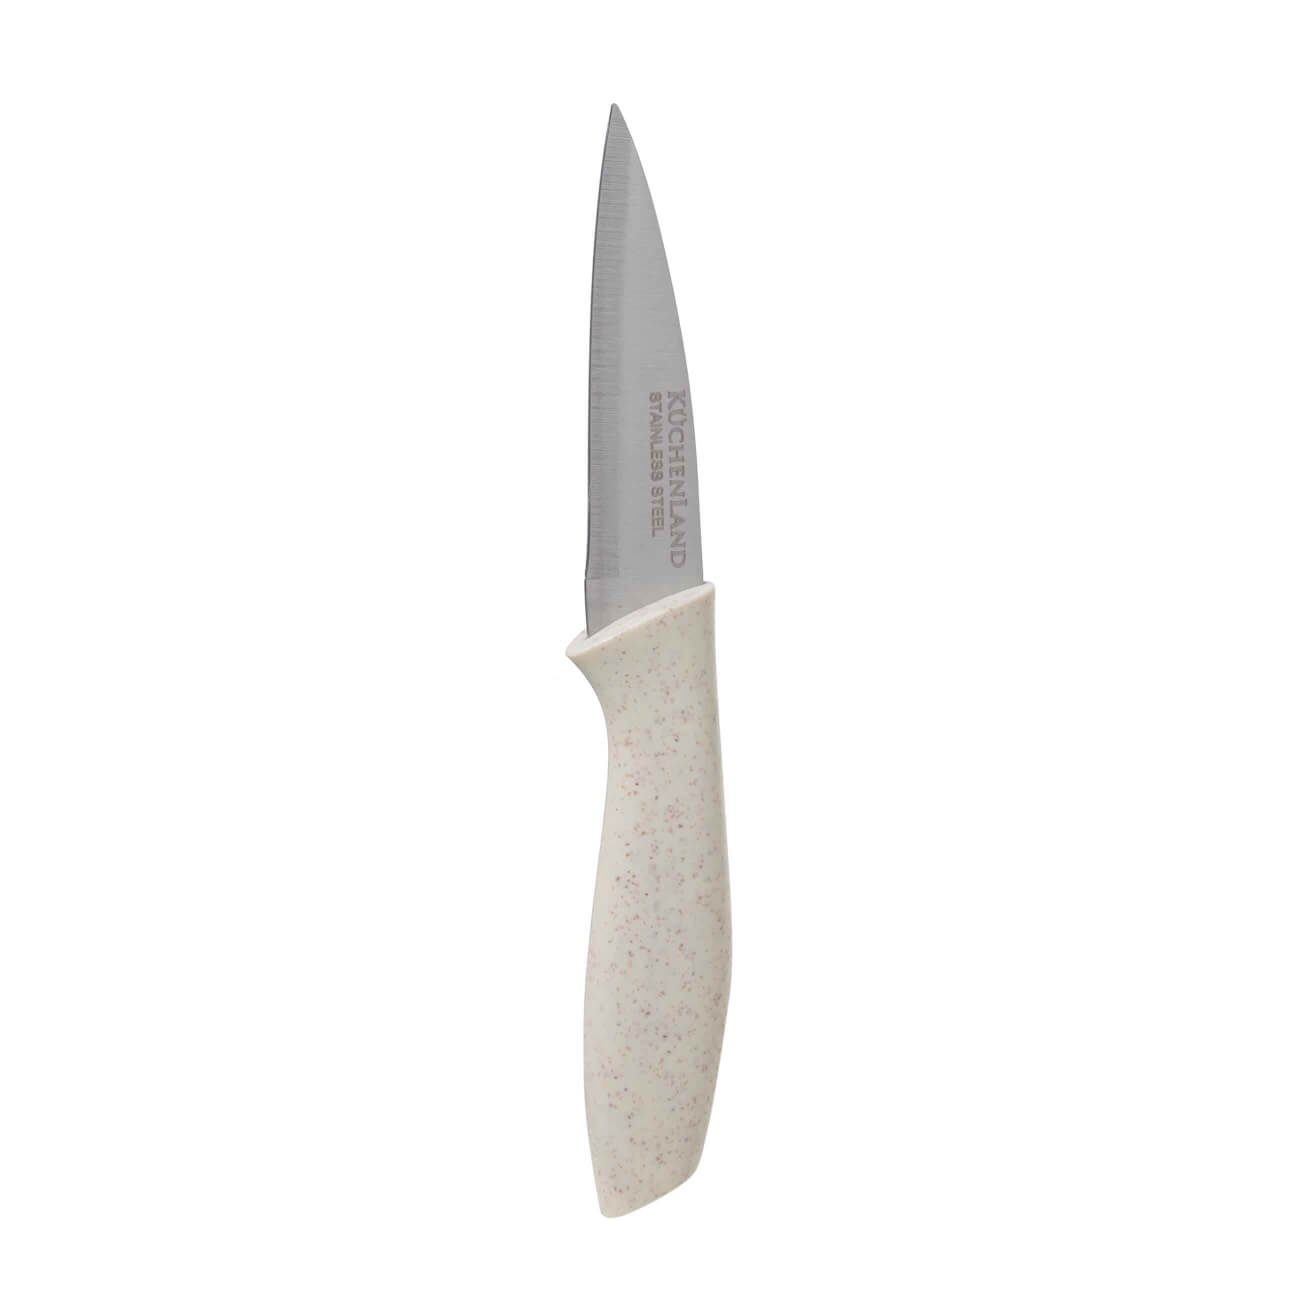 Нож для чистки овощей, 9 см, сталь/пластик, молочный, Speck-light цельнометаллический нож для овощей mallony